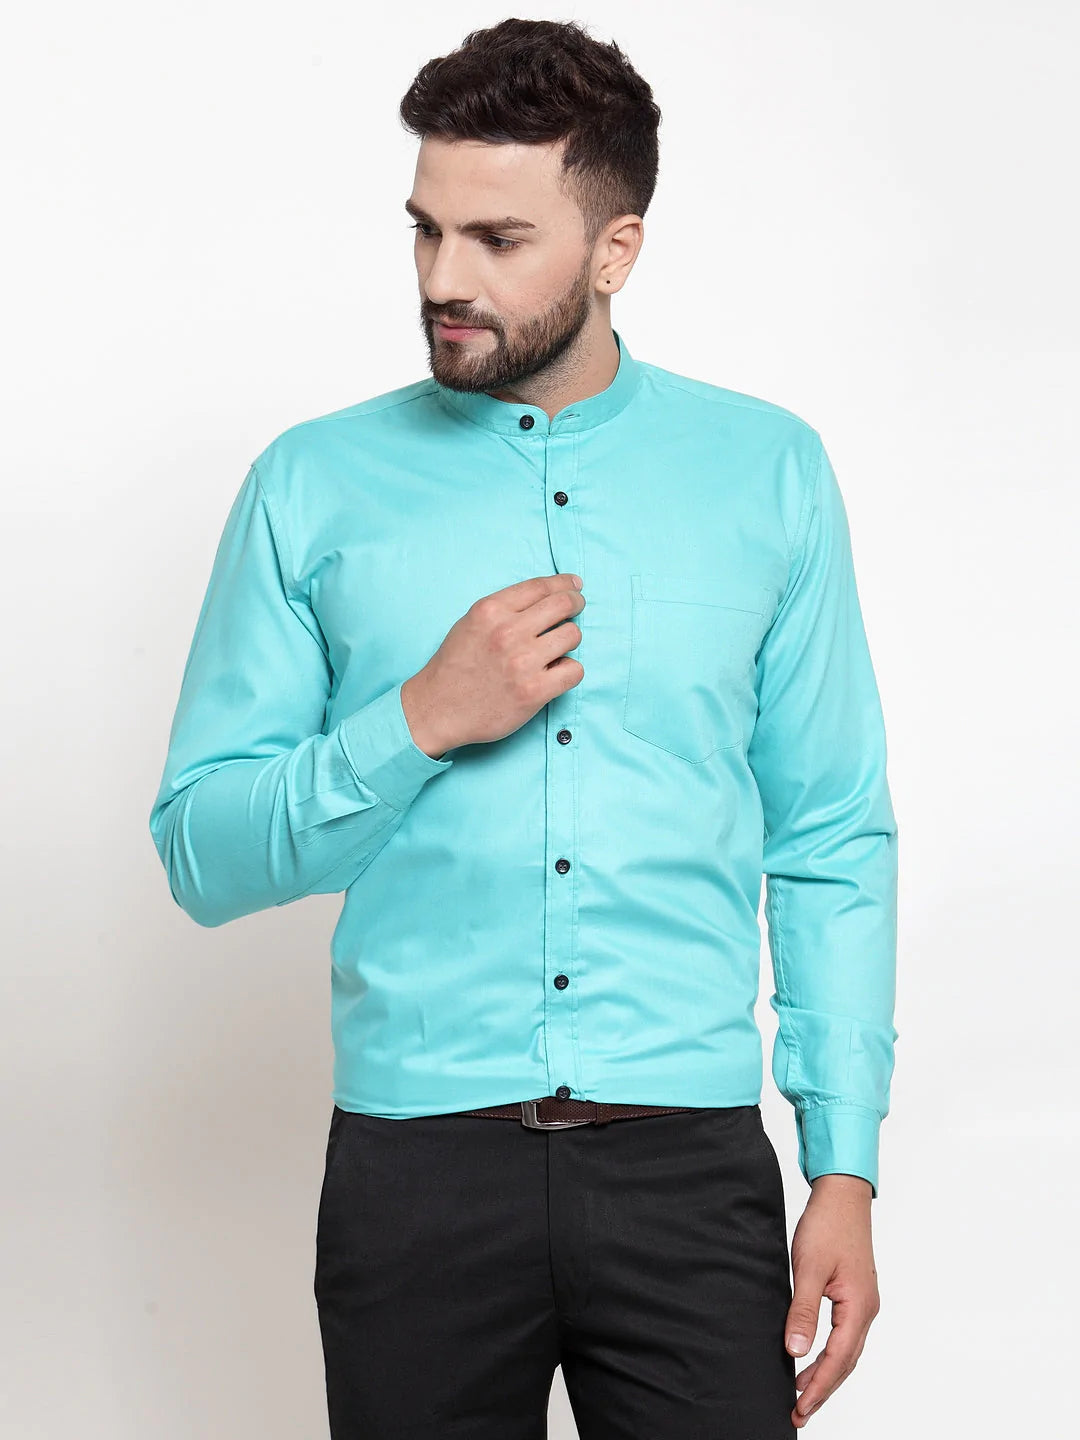 Jainish Green Men's Cotton Solid Mandarin Collar Formal Shirts ( SF 726Aqua )